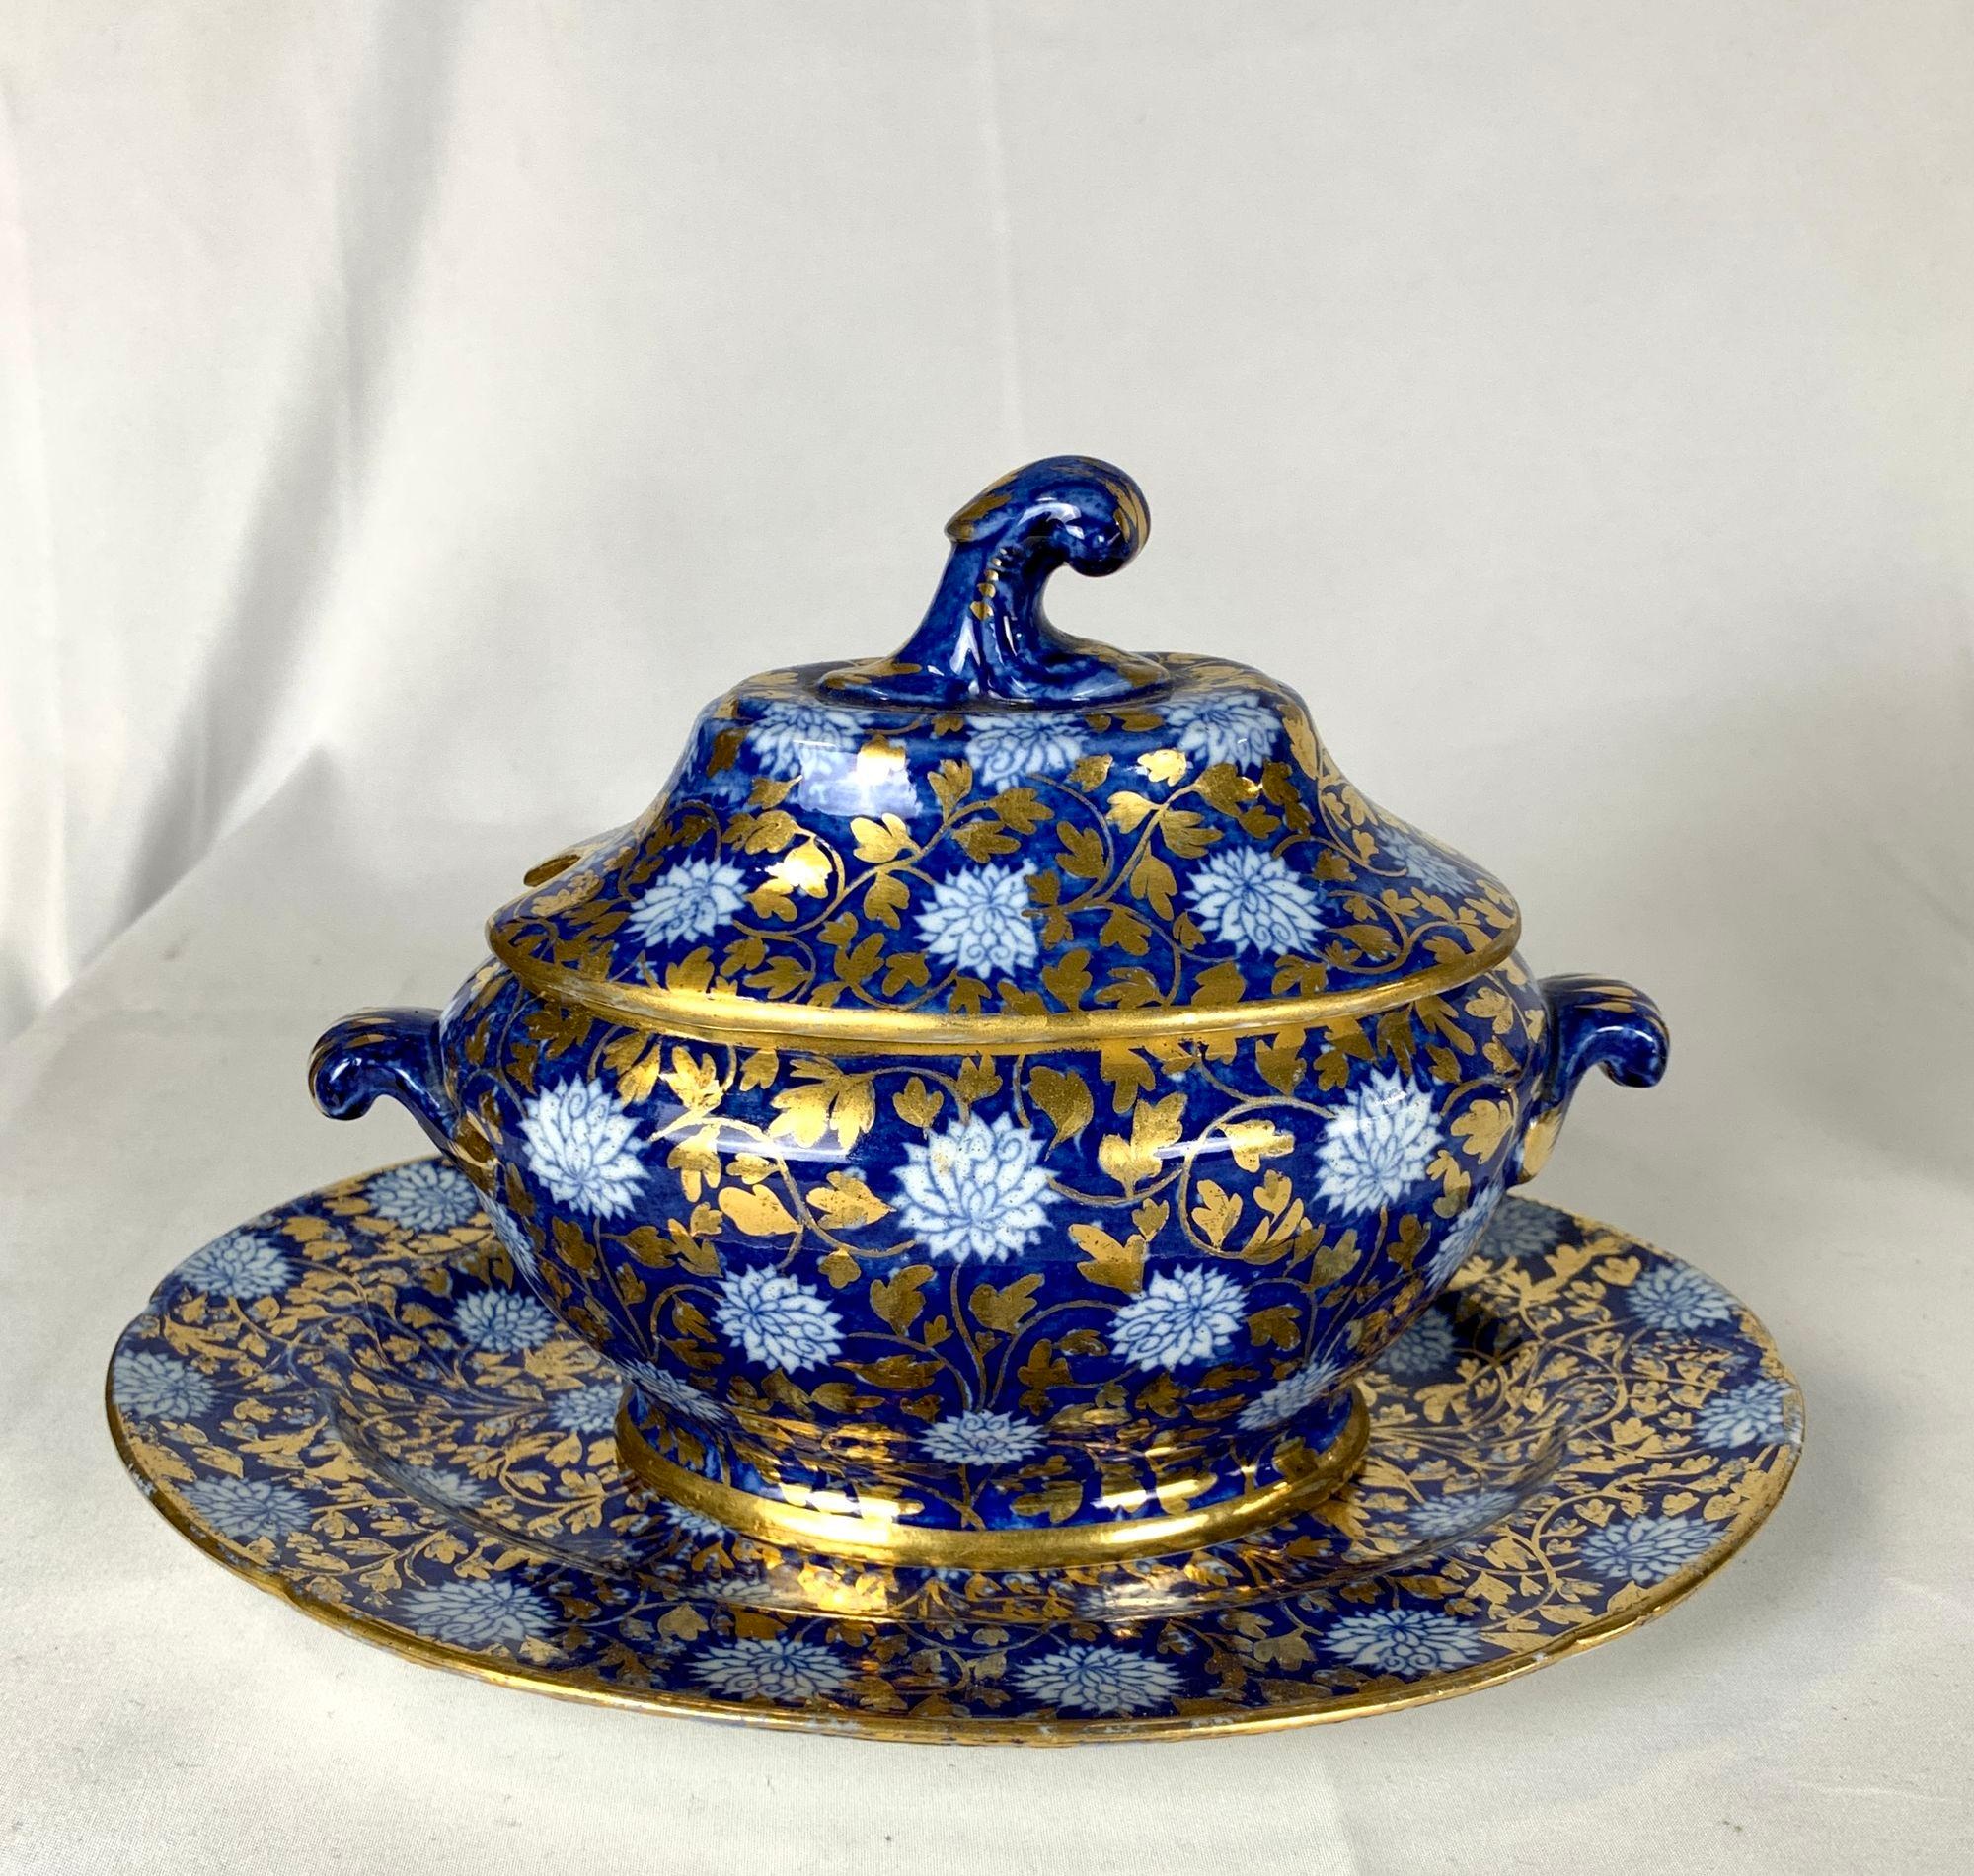  Dessert Set Coalport Porcelain Dishes Hand Painted 32 Pieces England Circa 1810 For Sale 1